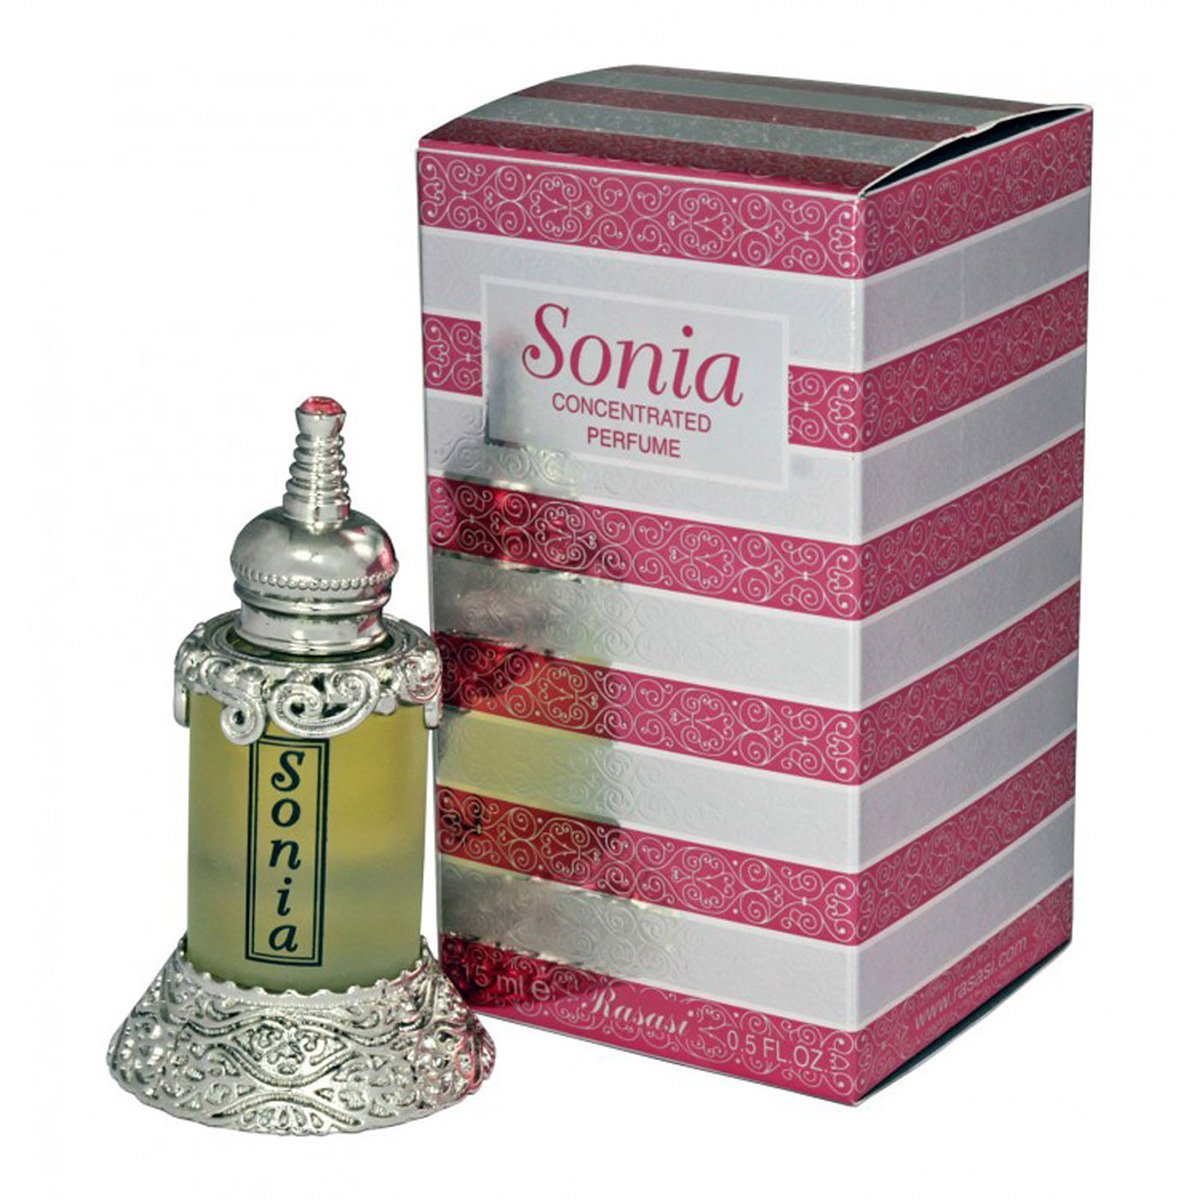 Sonia Perfume Oil 15ml Rasasi - Smile Europe Wholesale 